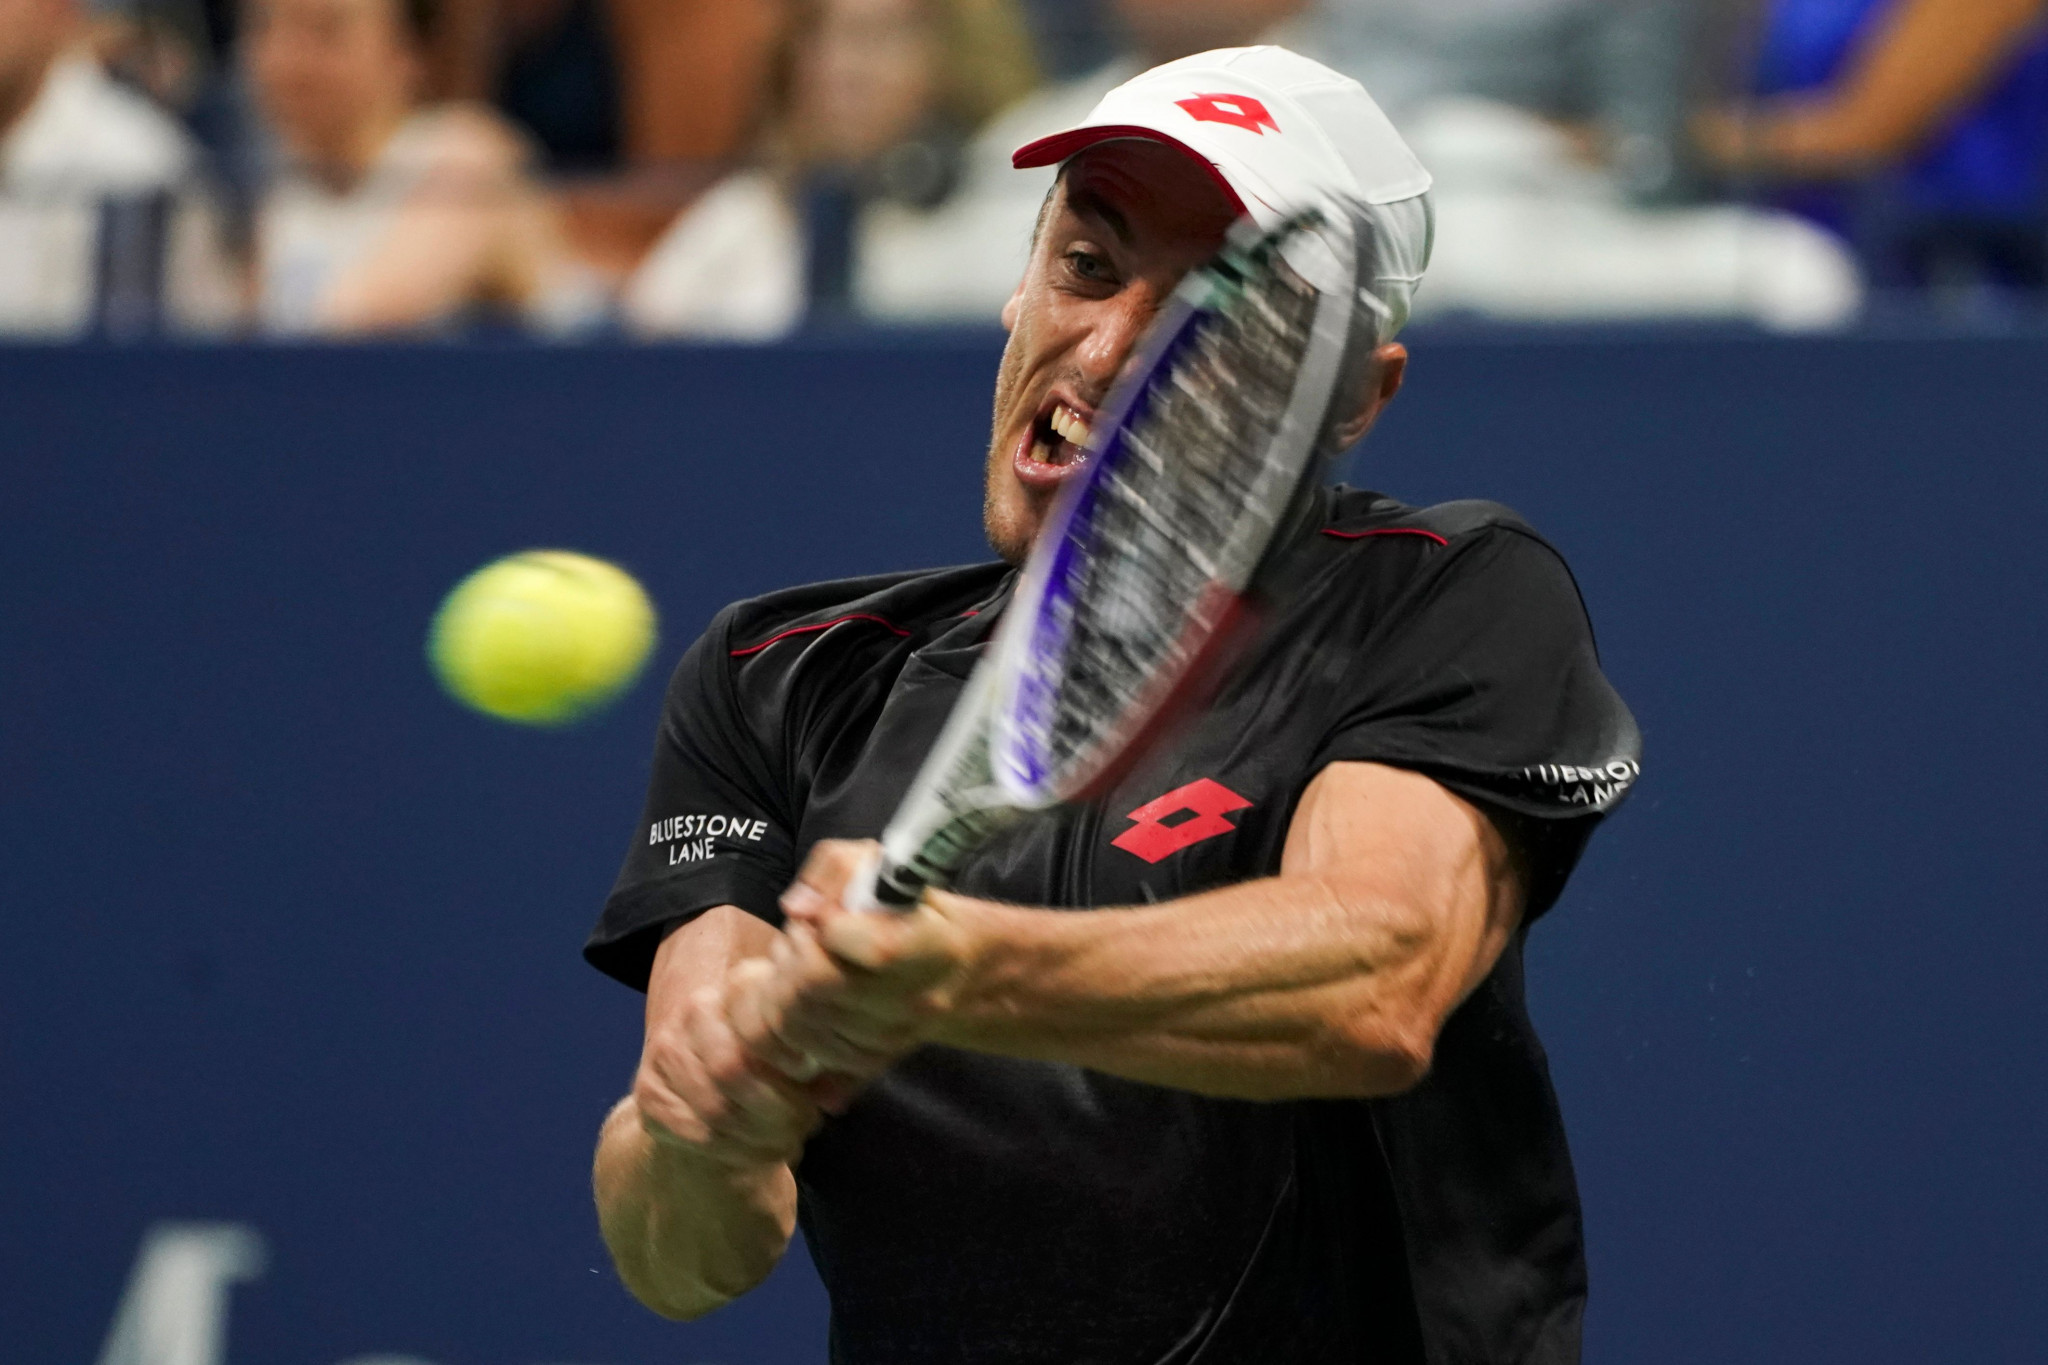 Australian world number 55 John Millman stunned 20-time Grand Slam champion Roger Federer at the US Open ©Getty Images